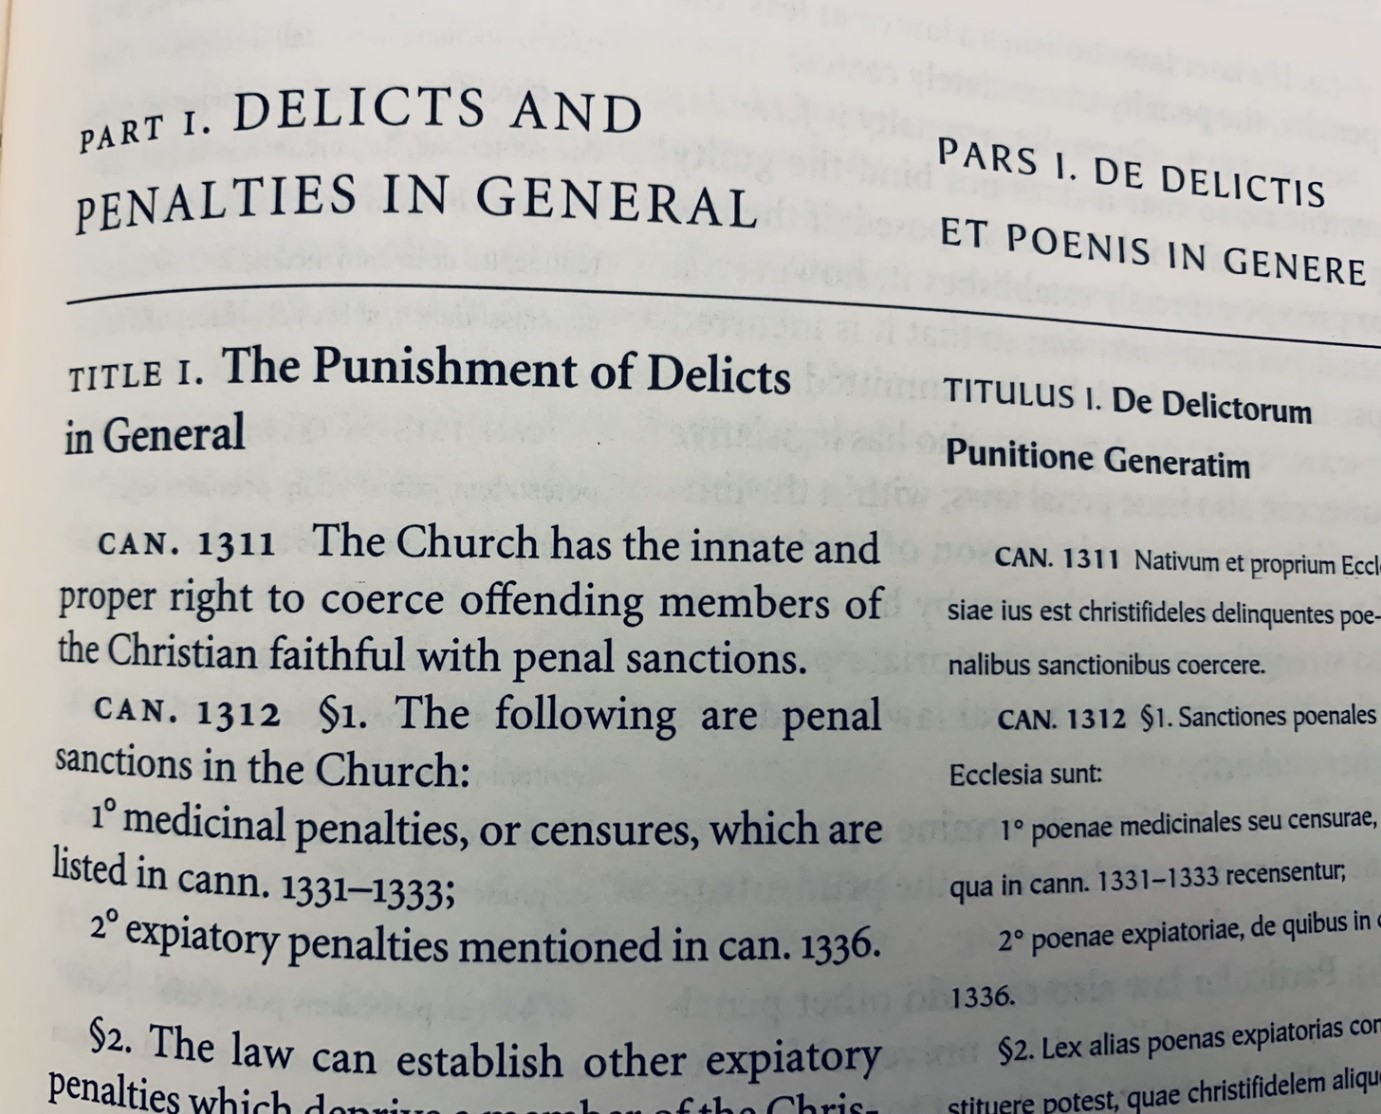 Tông hiến của Đức Phanxicô thay thế Quyển Sáu Bộ Giáo Luật 1983 theo giải thích của Tòa Thánh